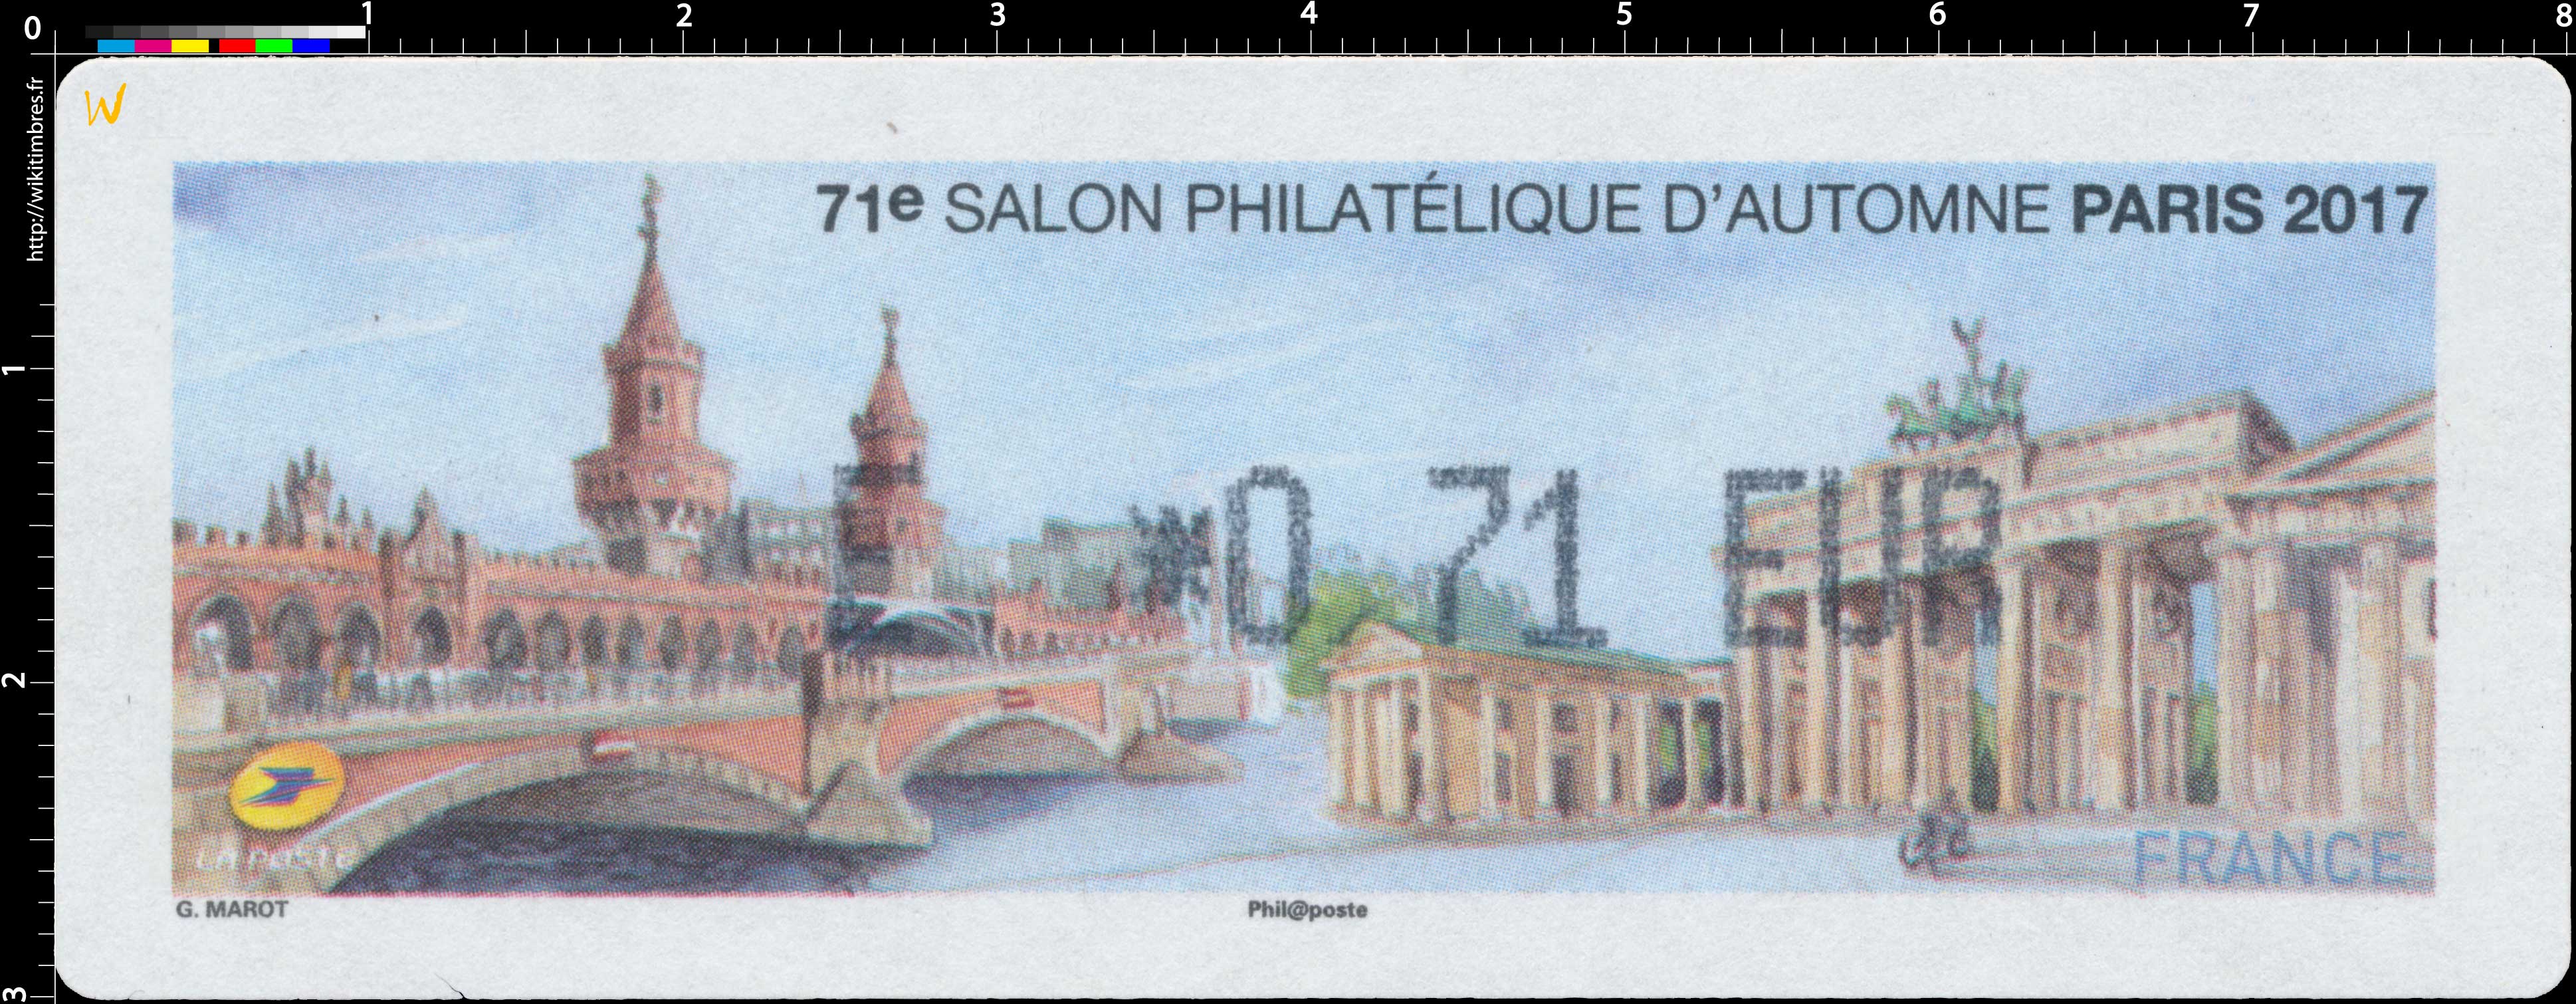 2017 71e Salon Philatélique d’Automne Paris